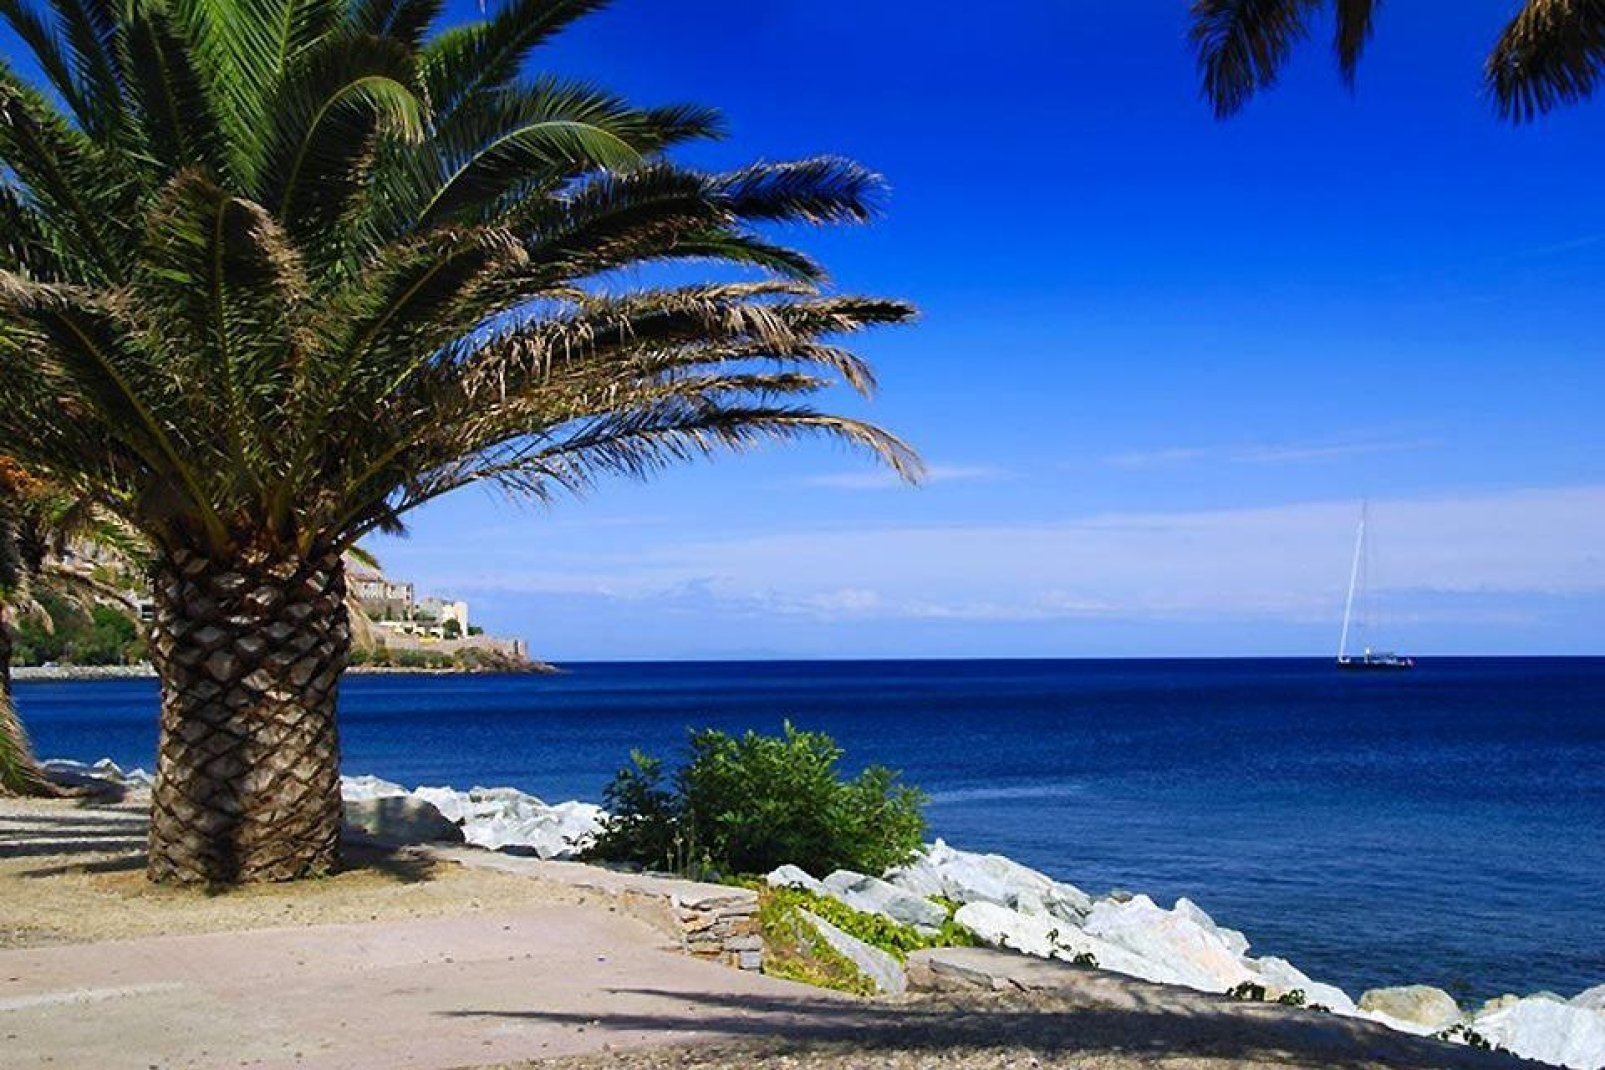 Sechs Strände befinden sich in der Nähe der Stadt Bastia, wo man herrliche Aussichten über das Meer genießen kann.